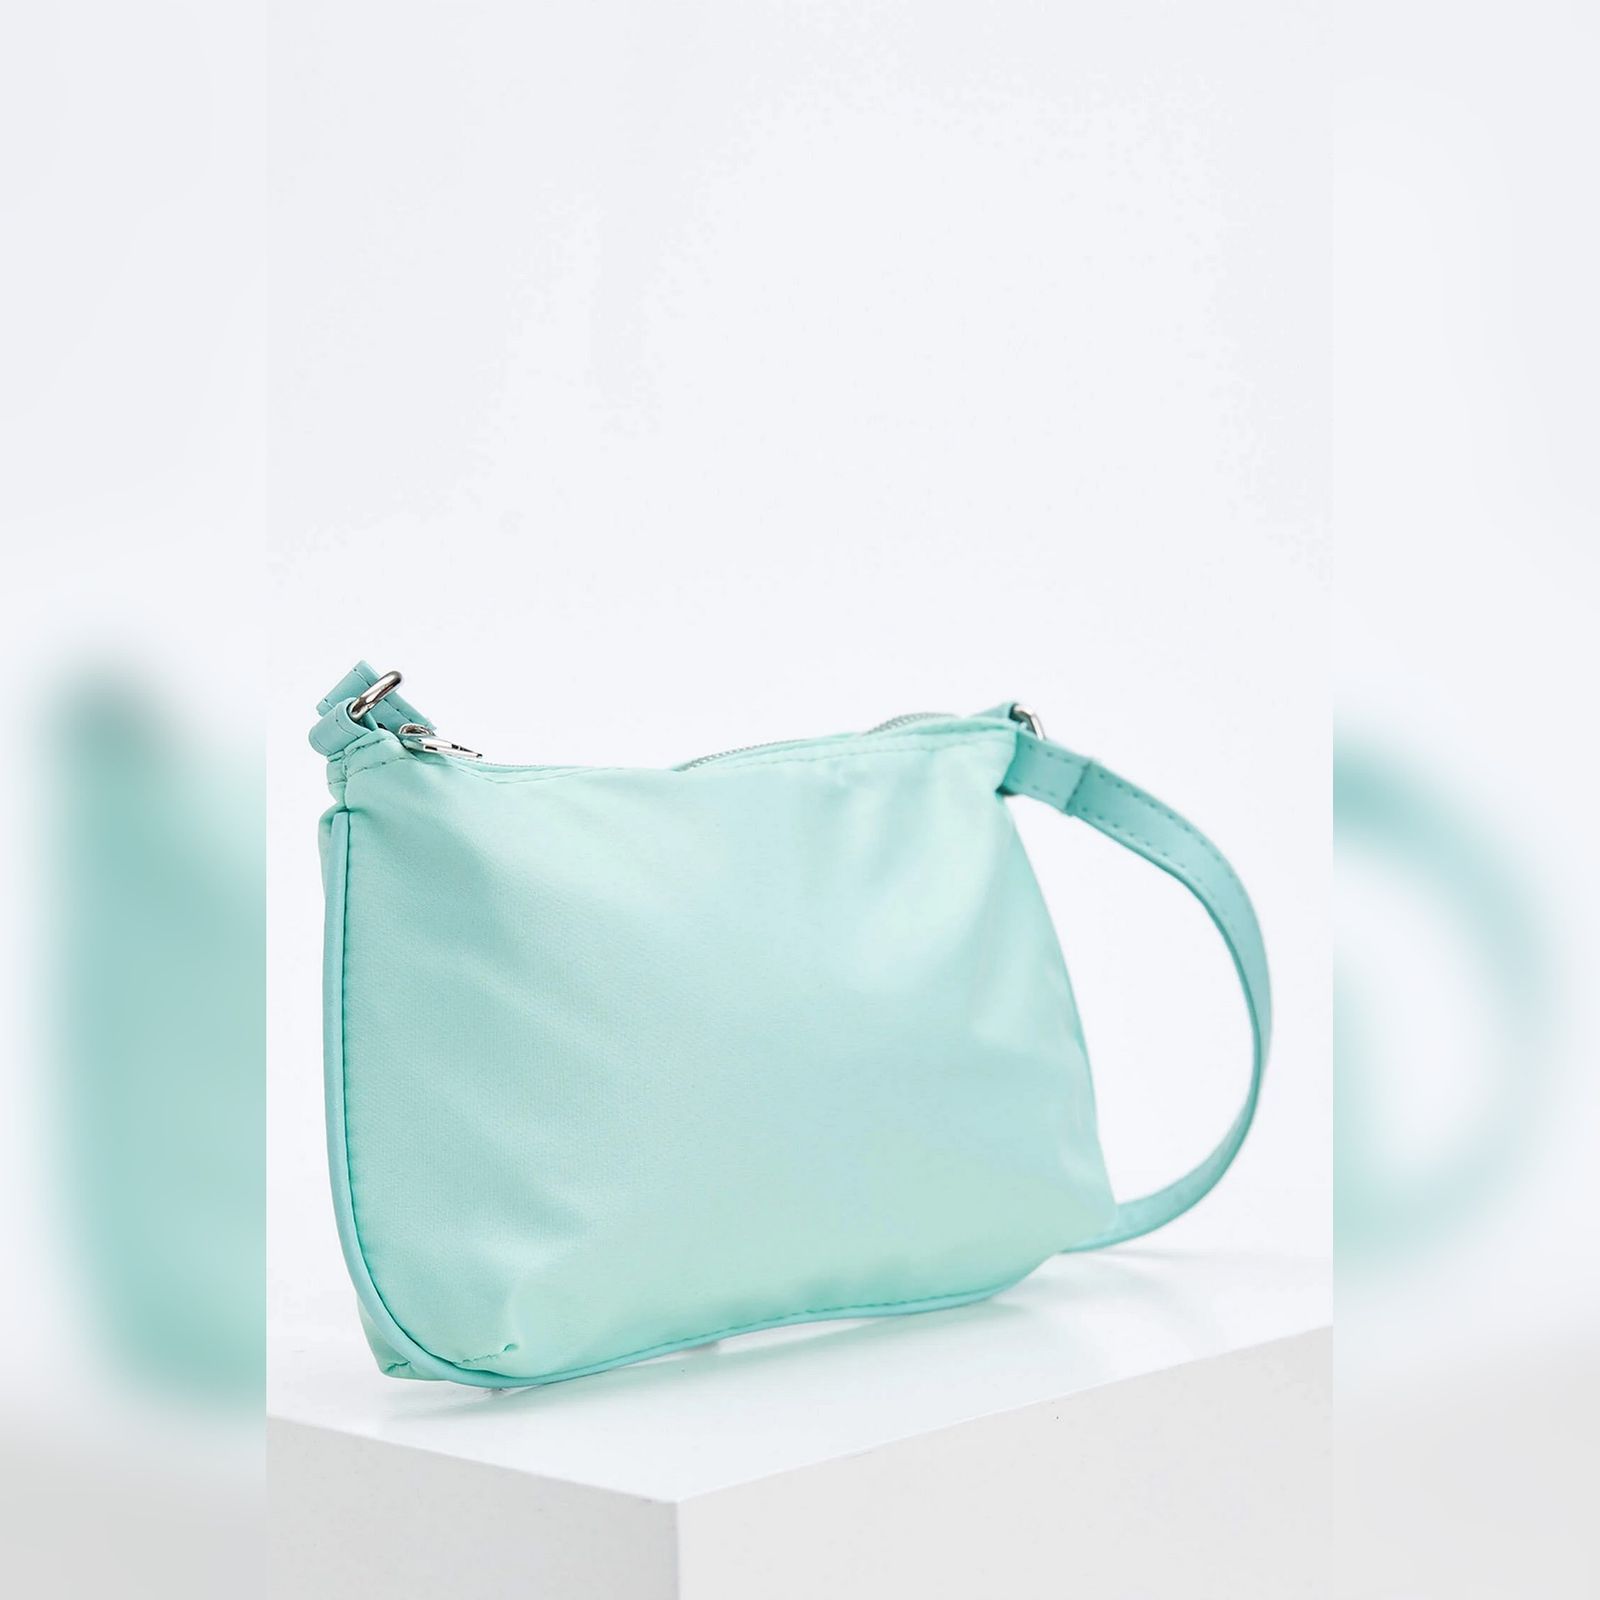 کیف دوشی زنانه دفکتو مدل minimal -  - 15